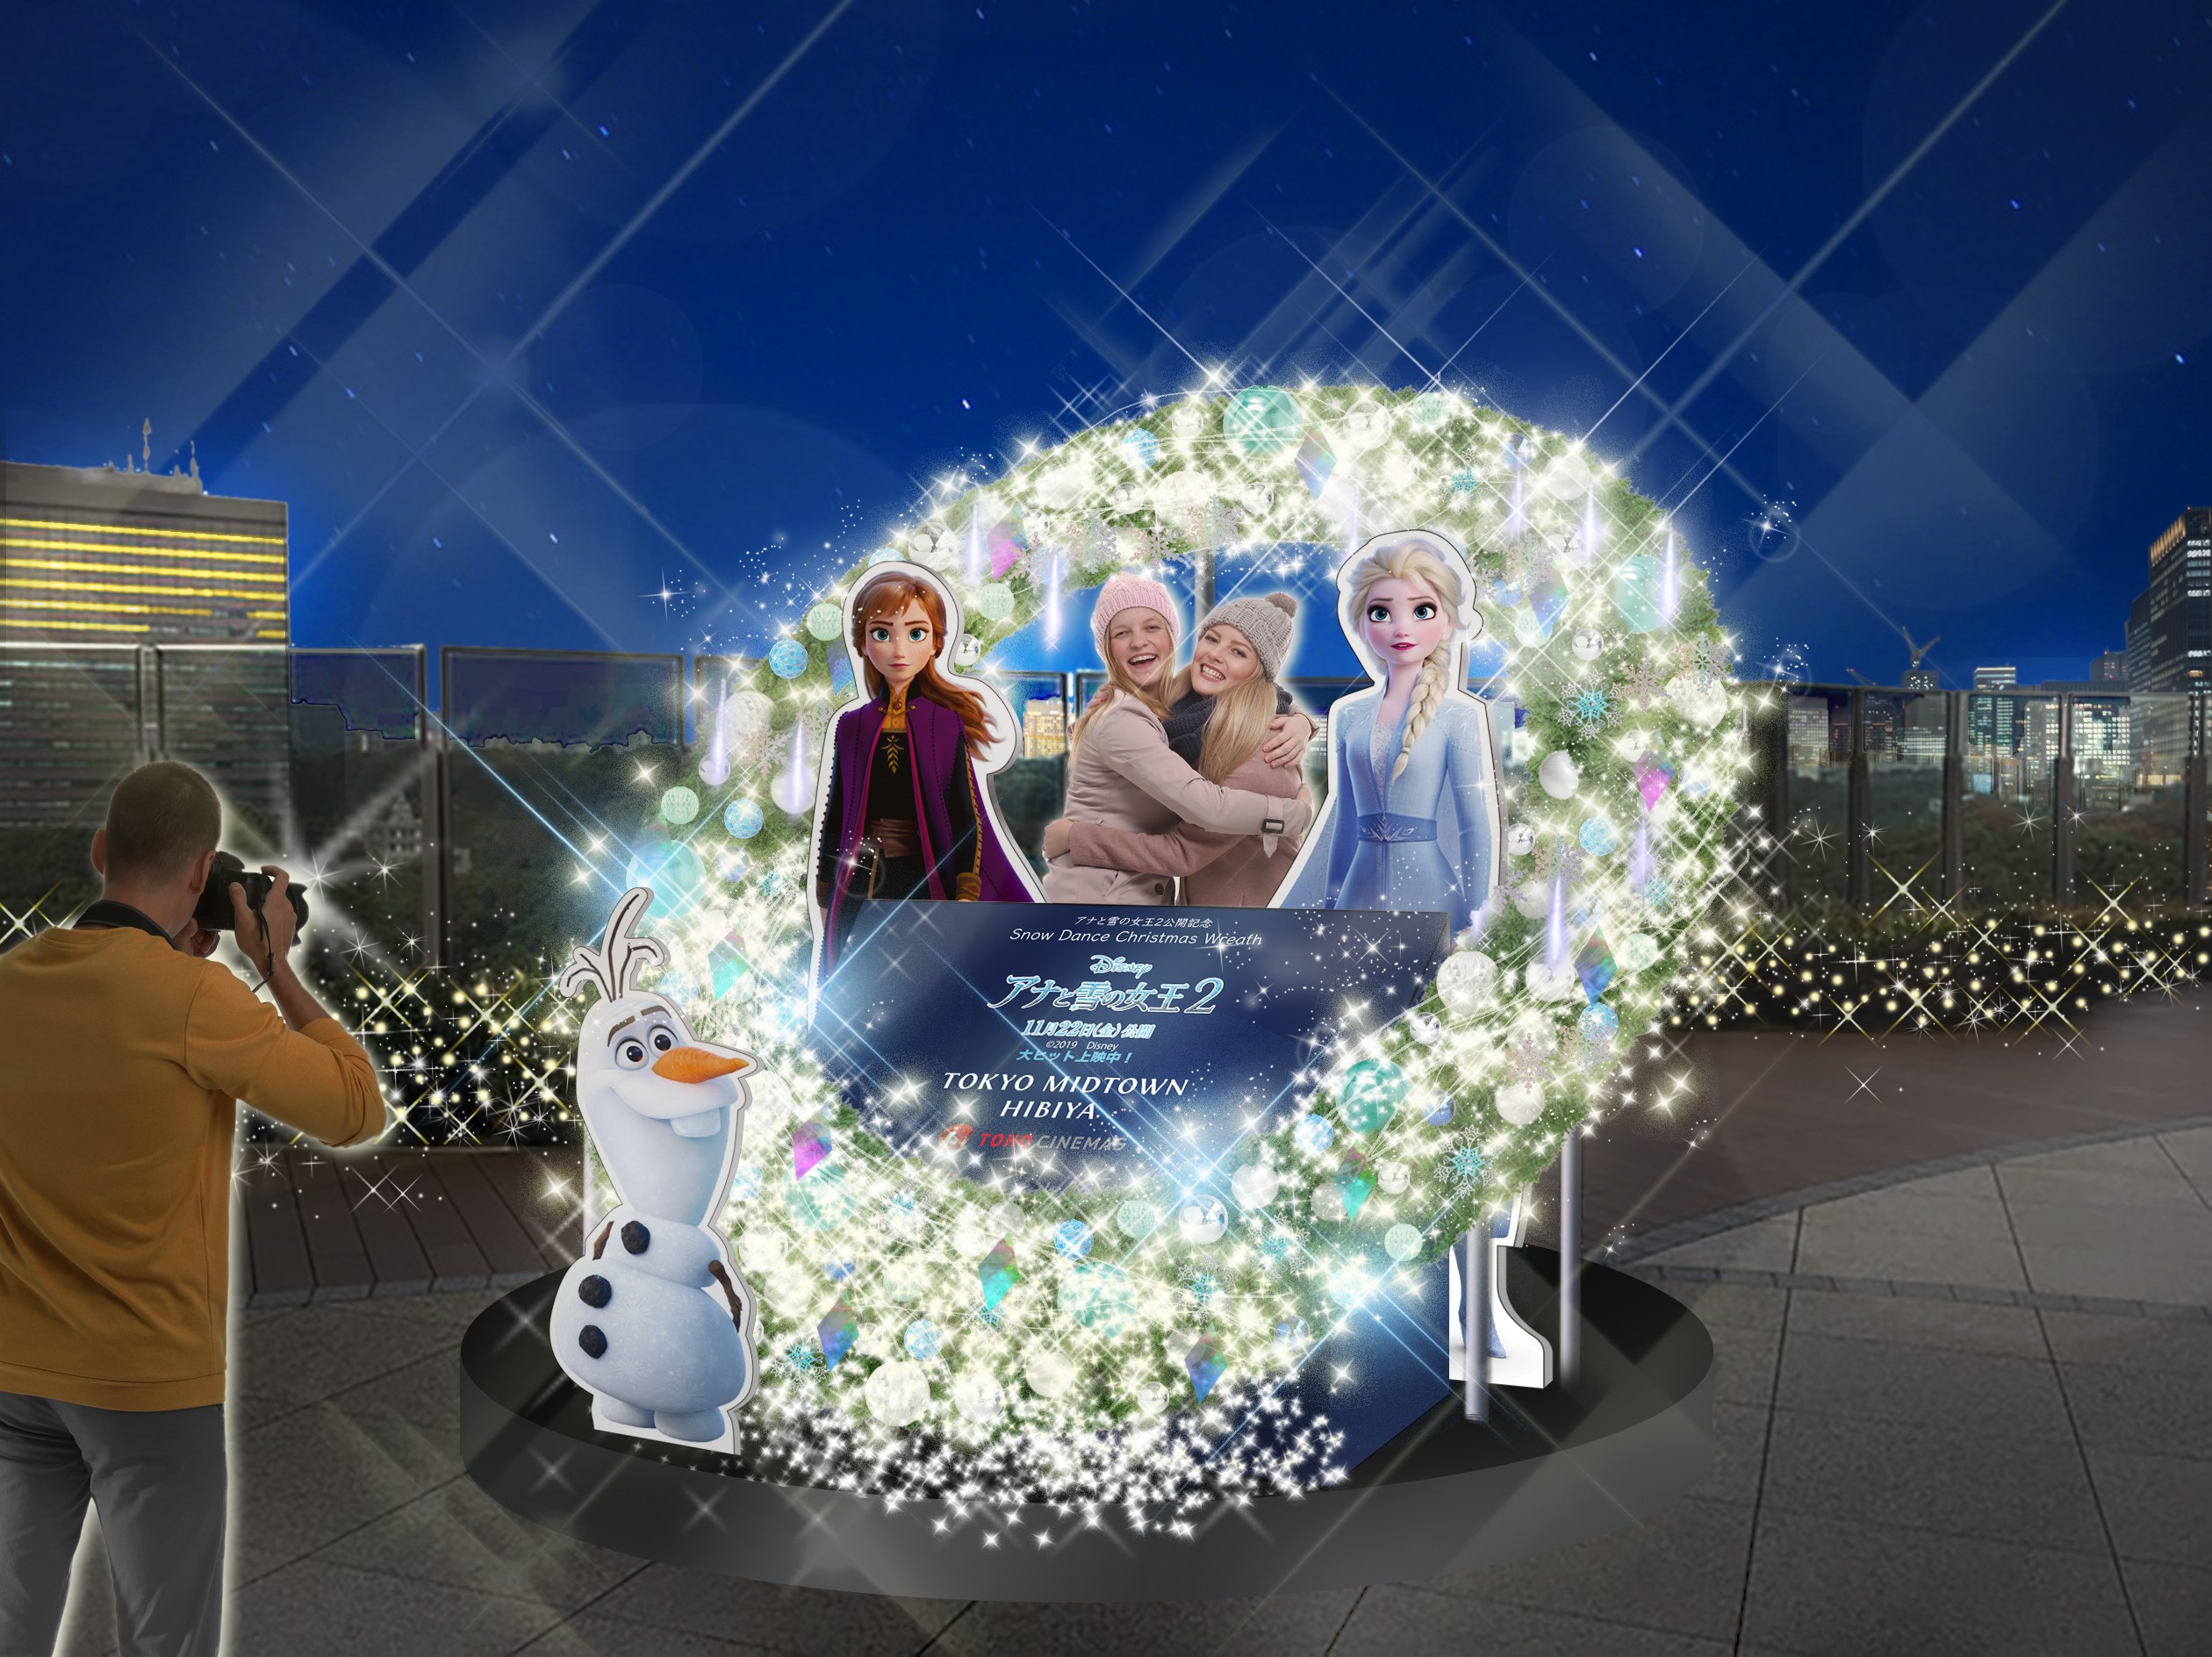 東京ミッドタウン日比谷 アナと雪の女王最新作 アナと雪の女王2 公開記念 東京ミッドタウン日比谷 6階パークビューガーデンにて Snow Dance Christmas Wreath を開催 東京ミッドタウンマネジメント株式会社のプレスリリース